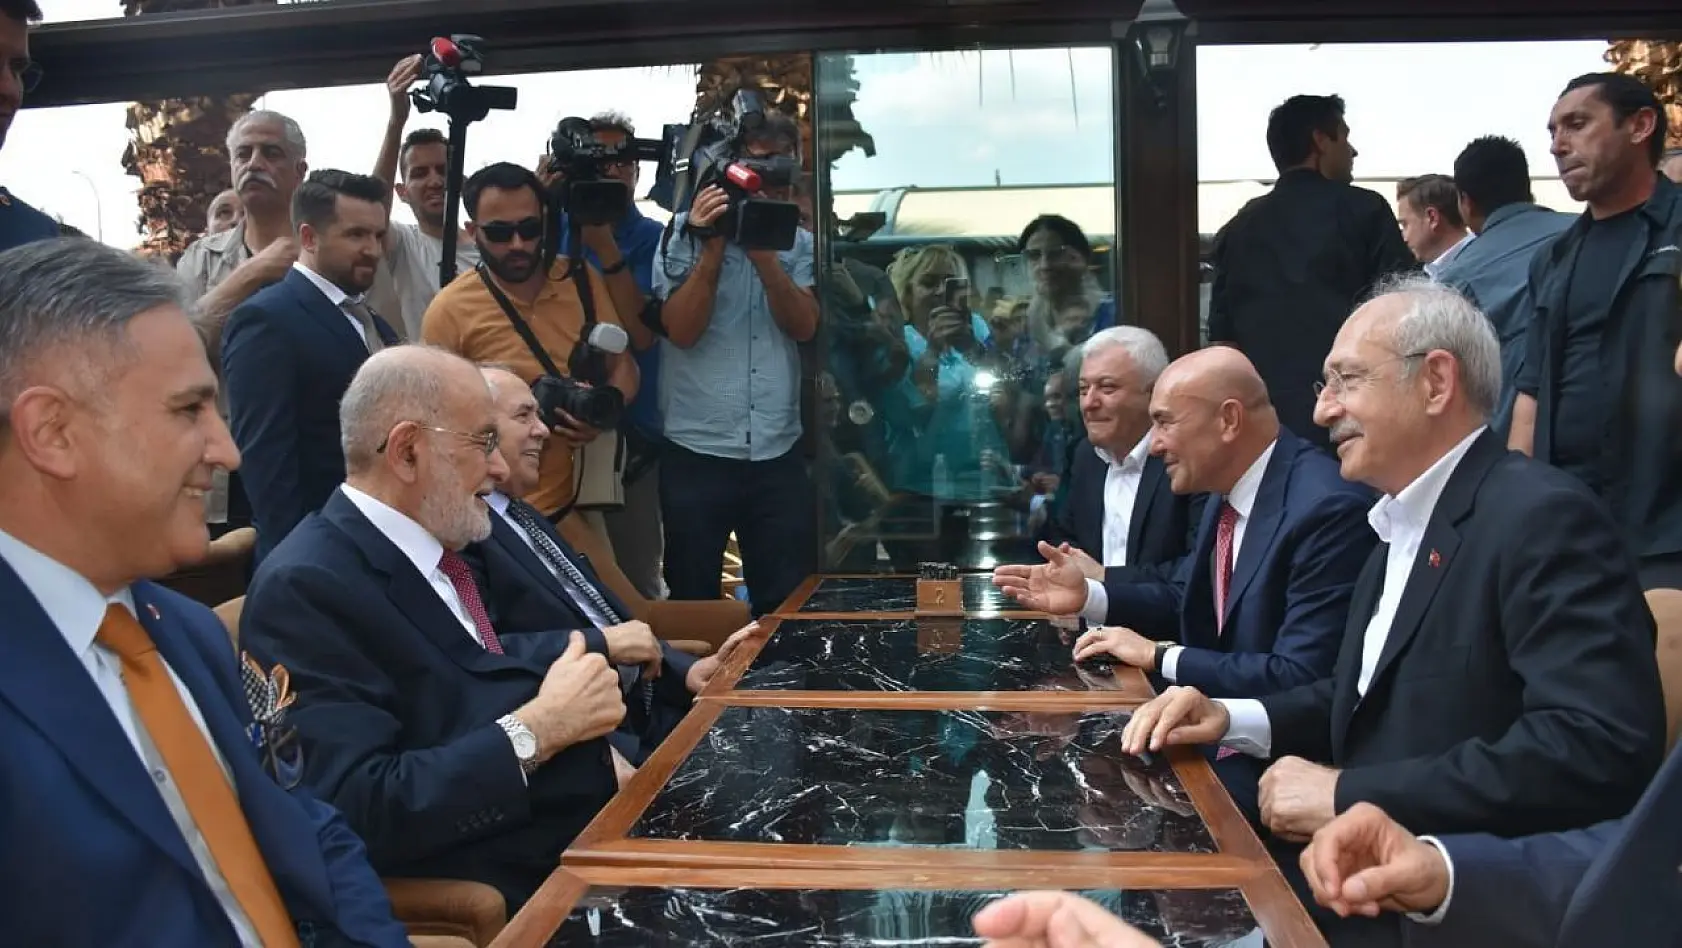 Kılıçdaroğlu ve Karamollaoğlu İzmir'de bir araya geldi